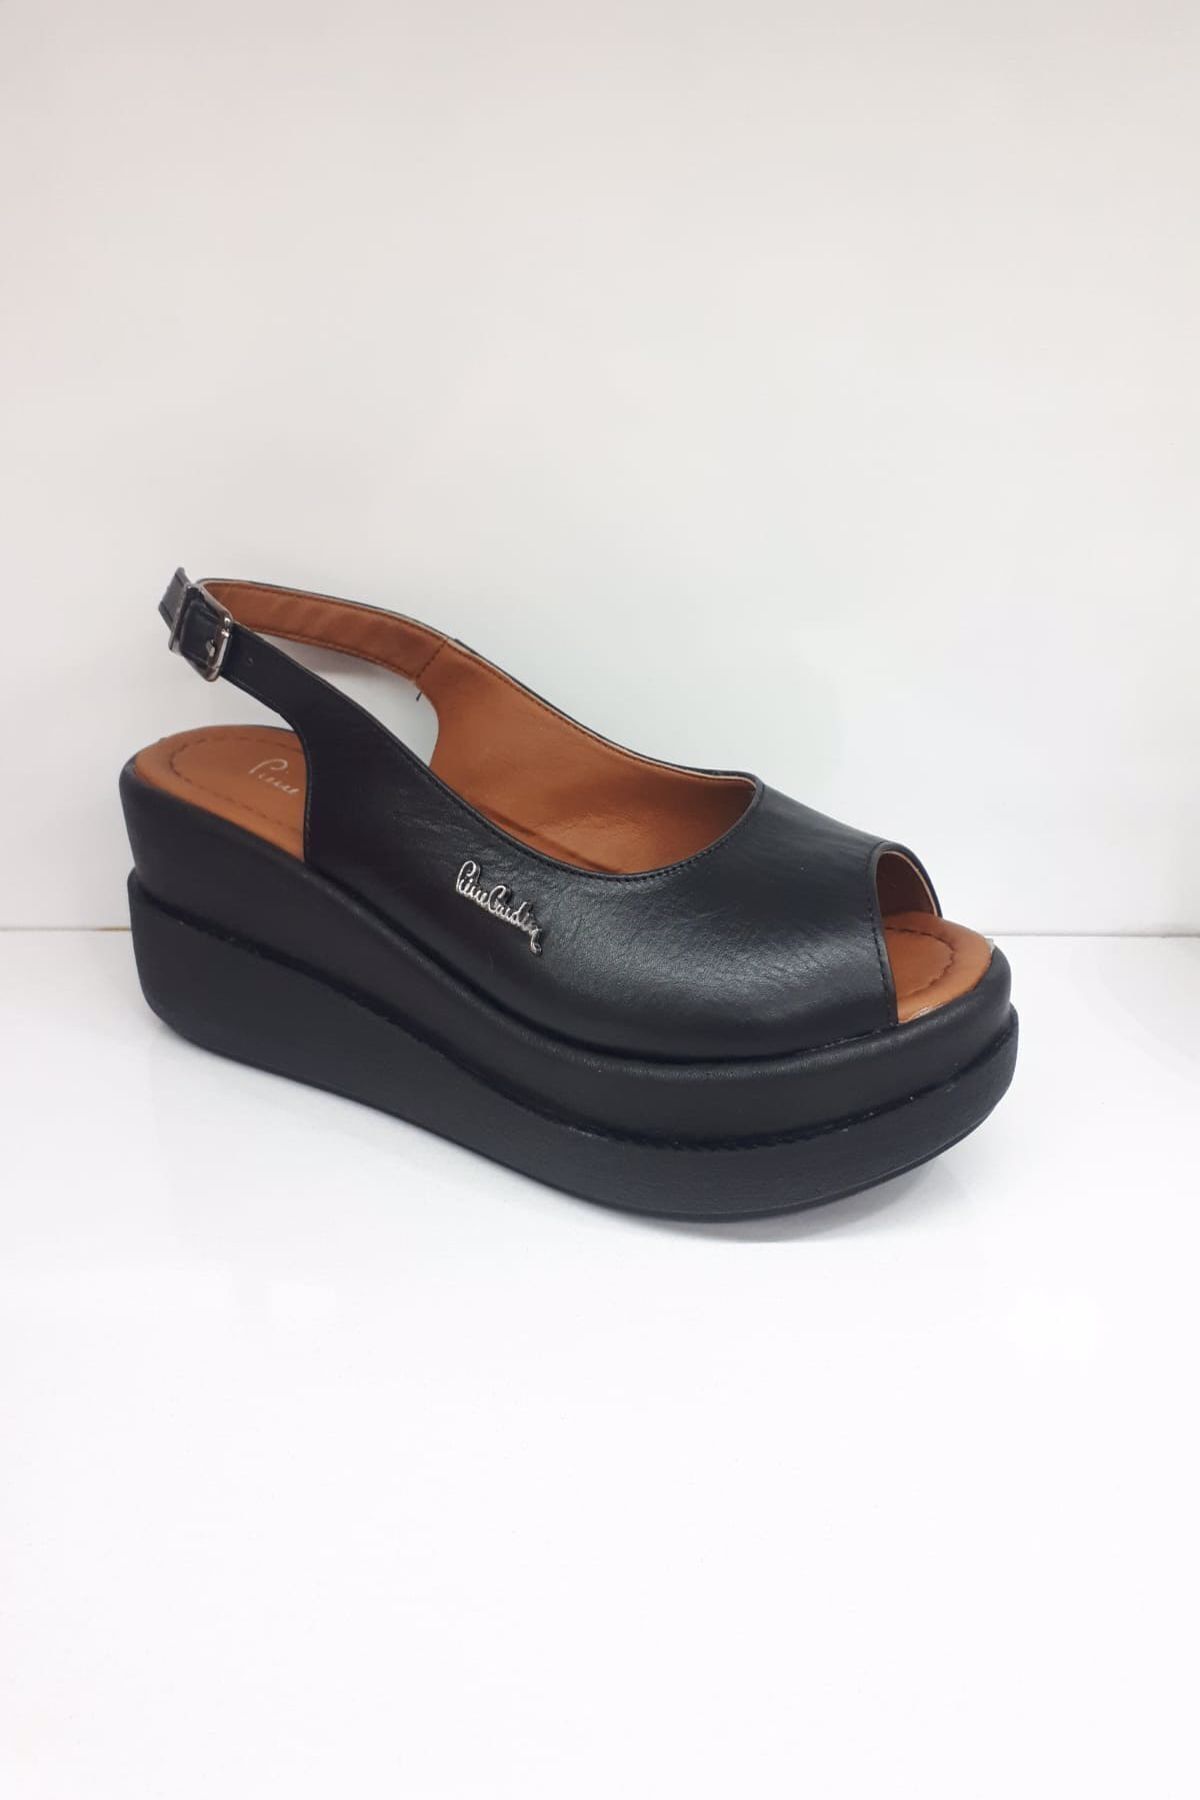 Pierre Cardin Kadın Siyah Hakiki Deri Sandalet 6511 Pc-6511-01